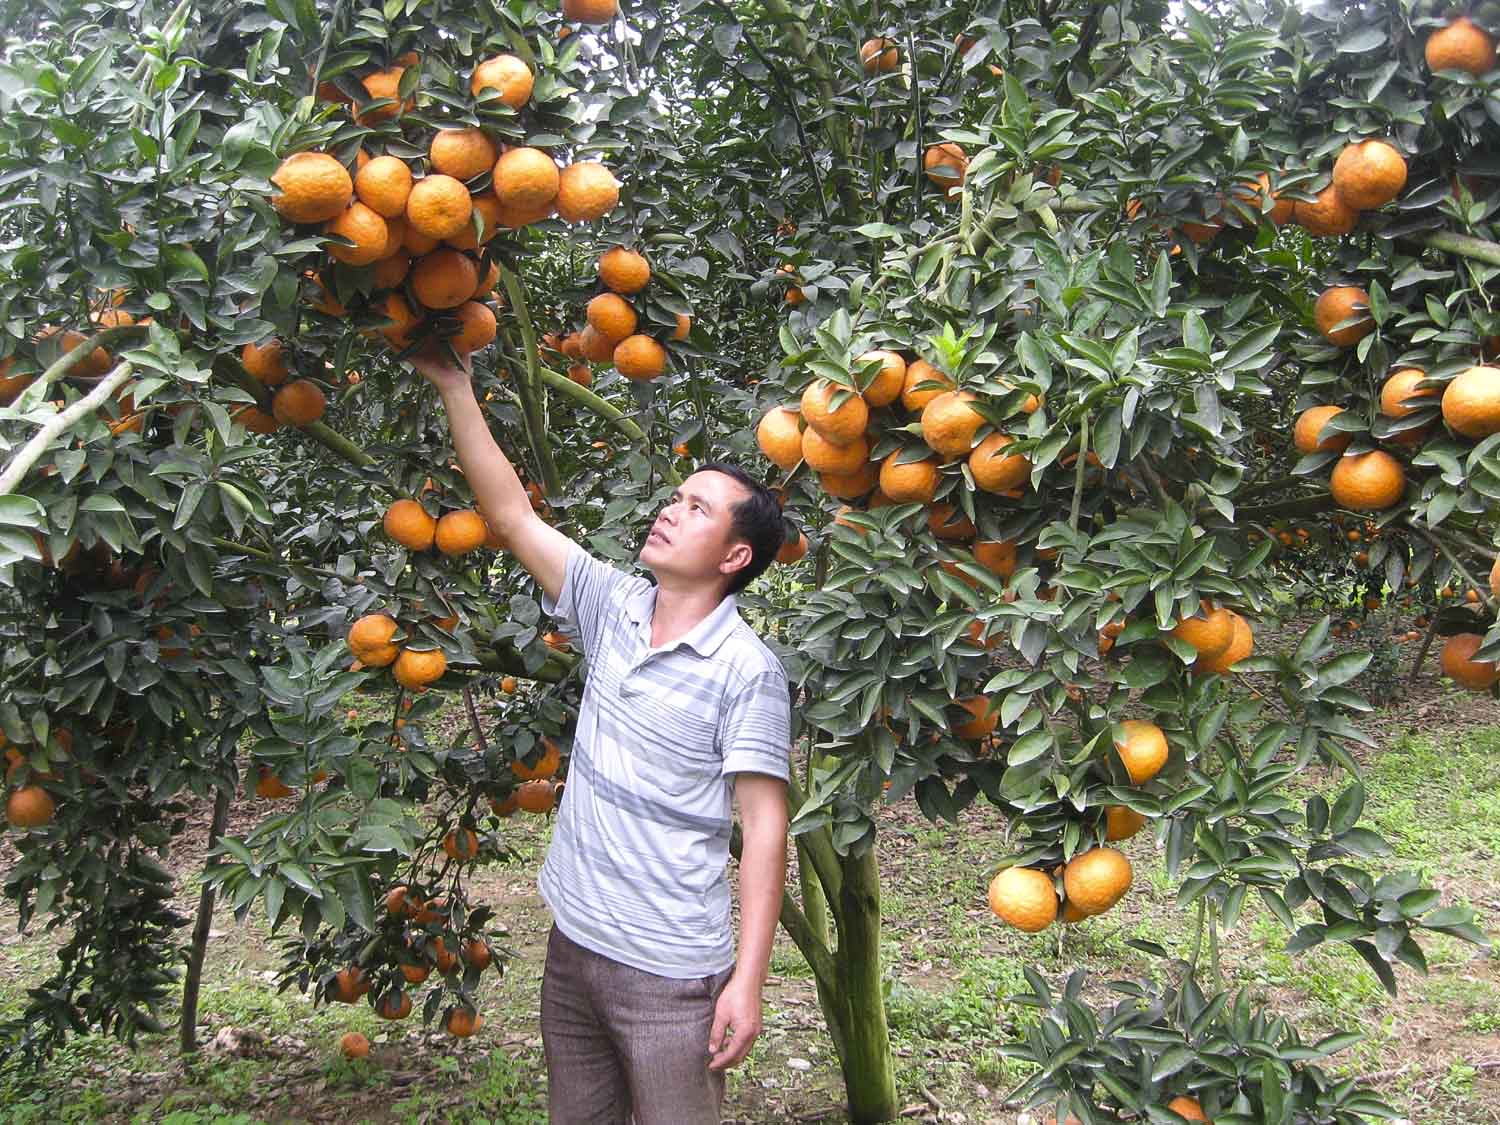 Nông dân trồng cam tại xã Vĩnh Hảo, huyện Bắc Quang, tỉnh Hà Giang là những người đầu tiên thực nghiệm sử dụng phân bón Văn Điển trên cây cam sành